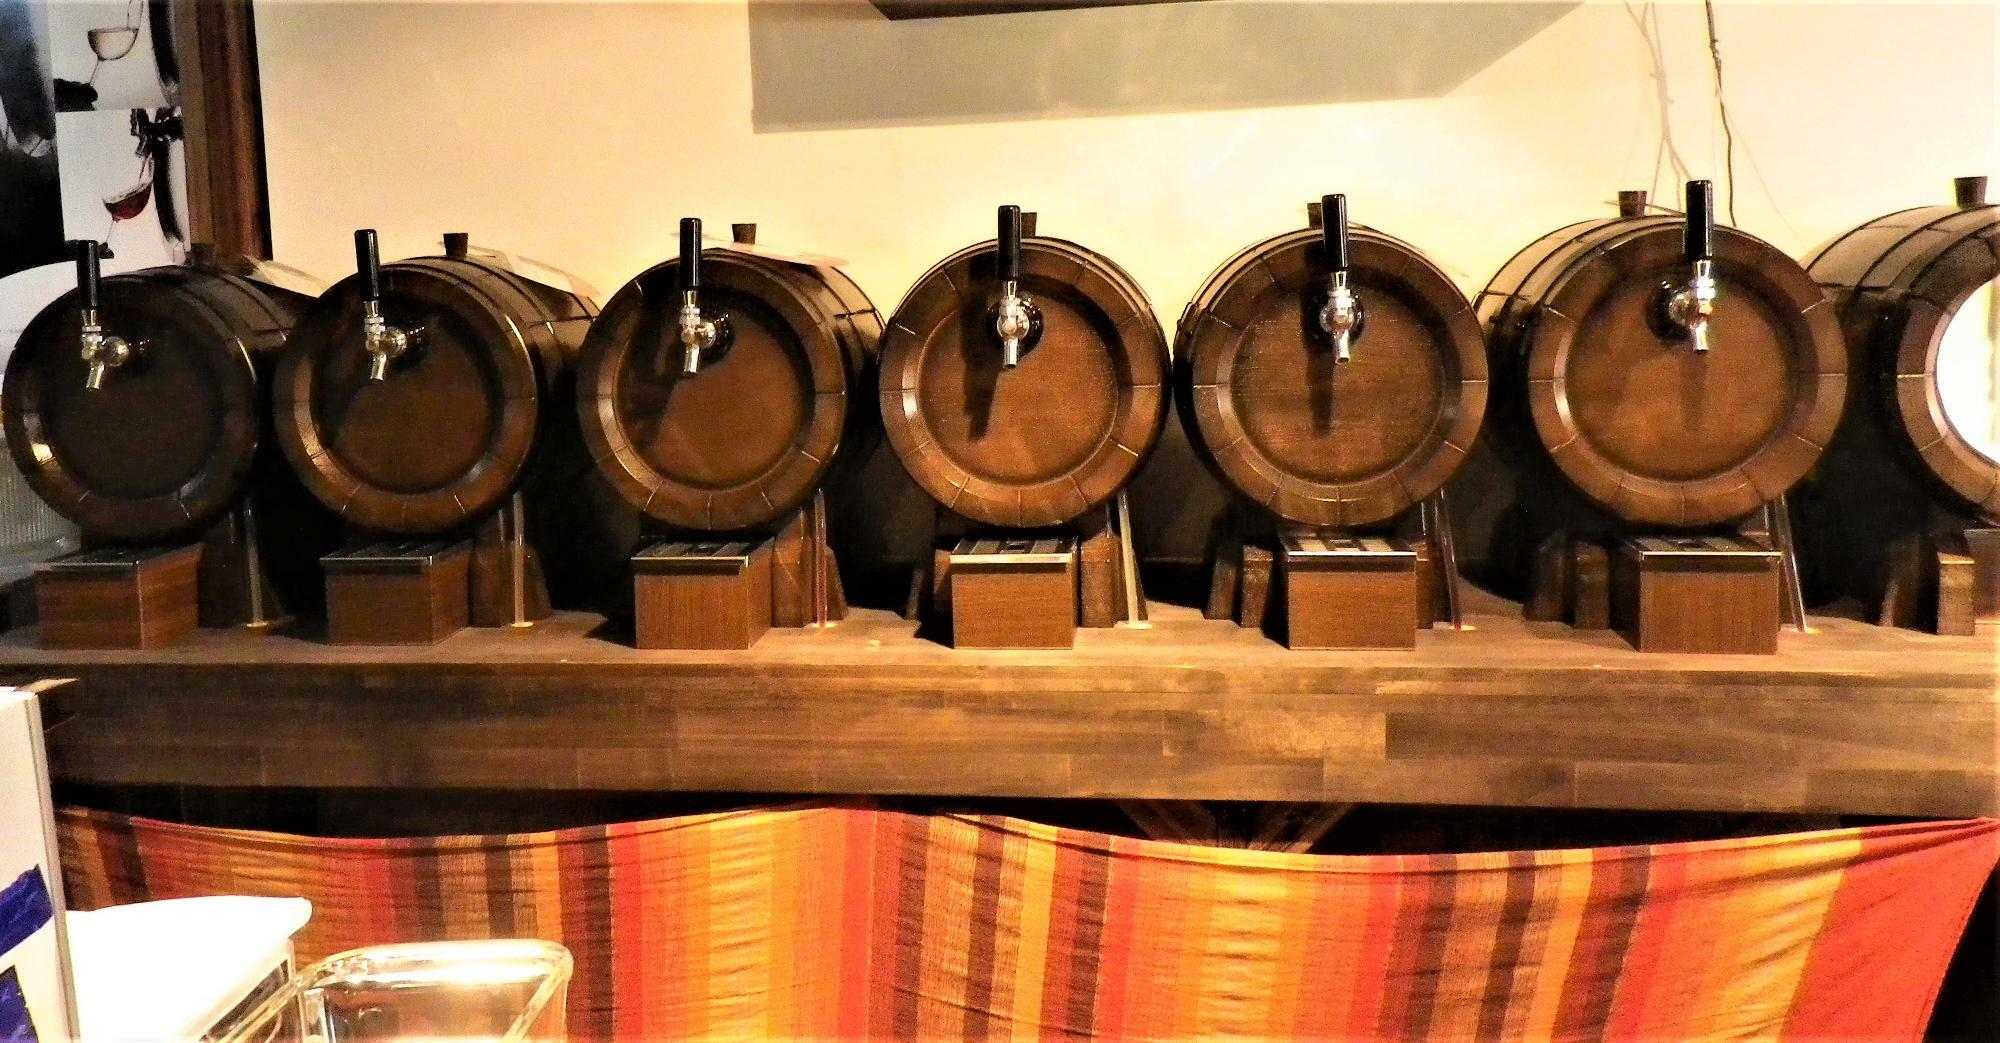 樽に見えるのは専用サーバー。布のカーテンの下に生ワインを詰めたステンレスの樽が！